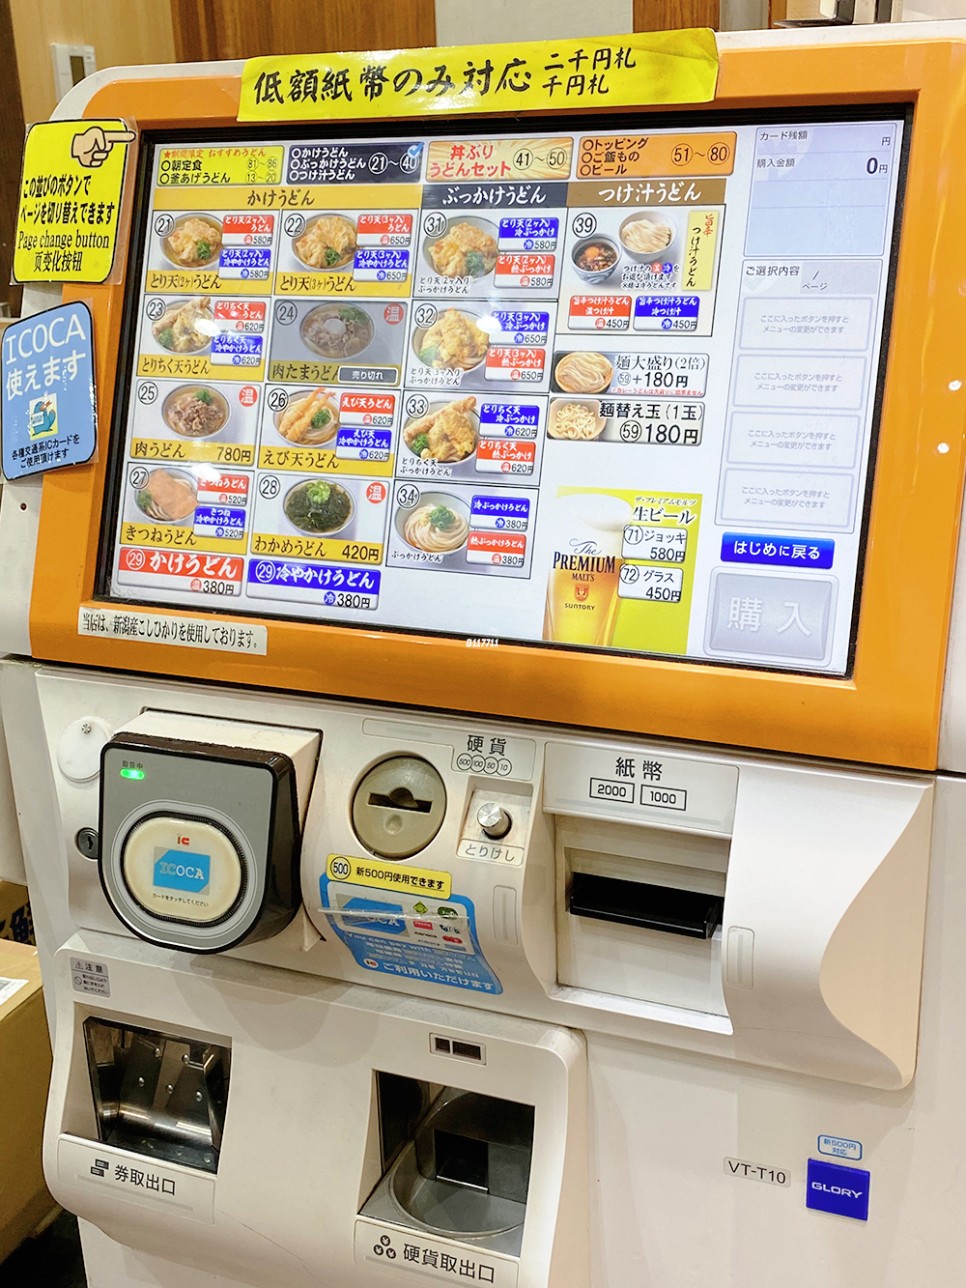 일본 오사카 교토 여행 3박 4일 마지막날 일정 기념품 쇼핑 추천